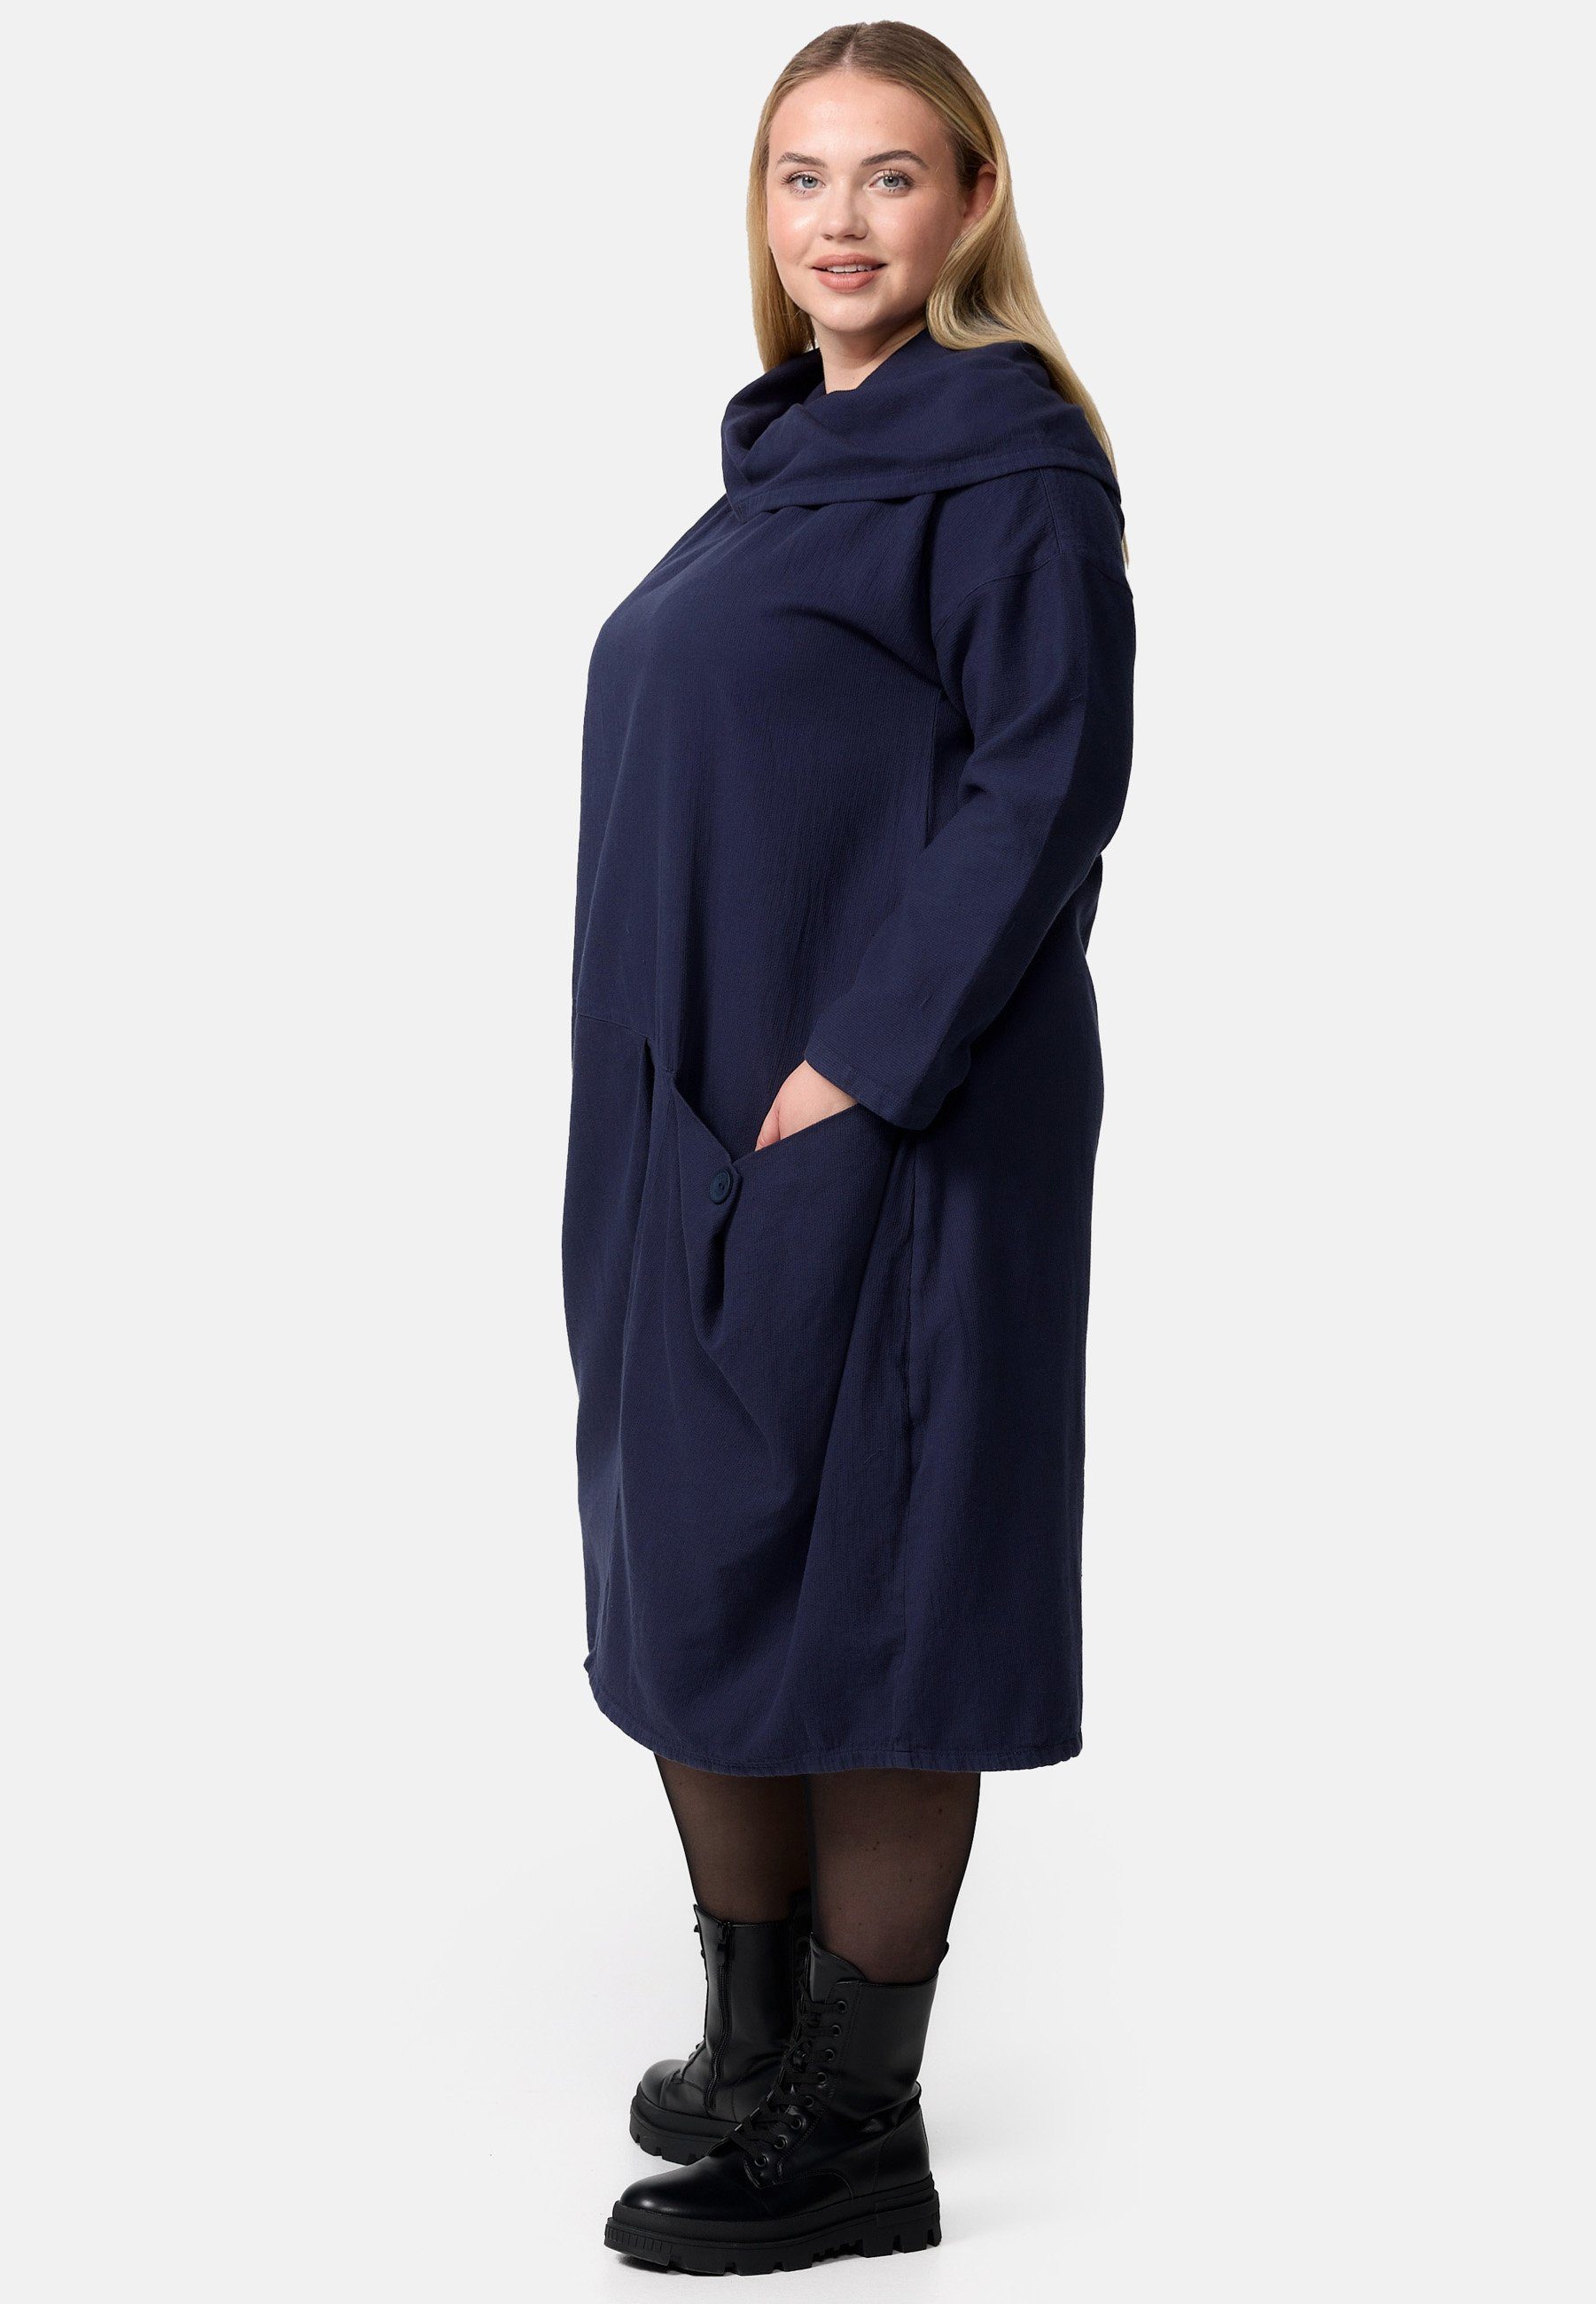 in Kekoo 'Sienna' aus A-Linie Cord-Kleid A-Linien-Kleid Navy Baumwolle 100%